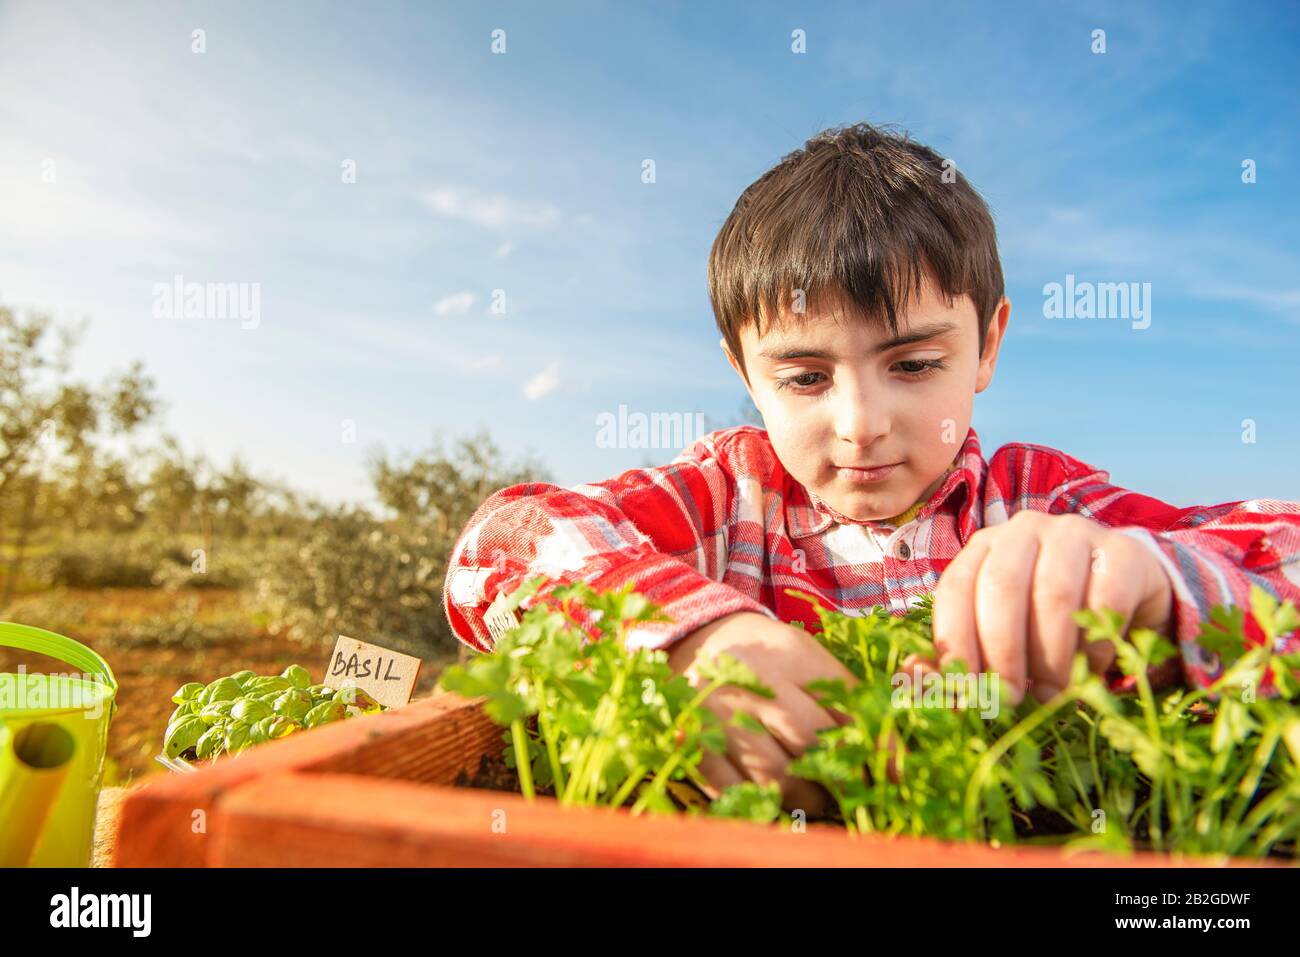 Das kleine Kind sät aromatische Pflanzen mitten auf dem Land Stockfoto